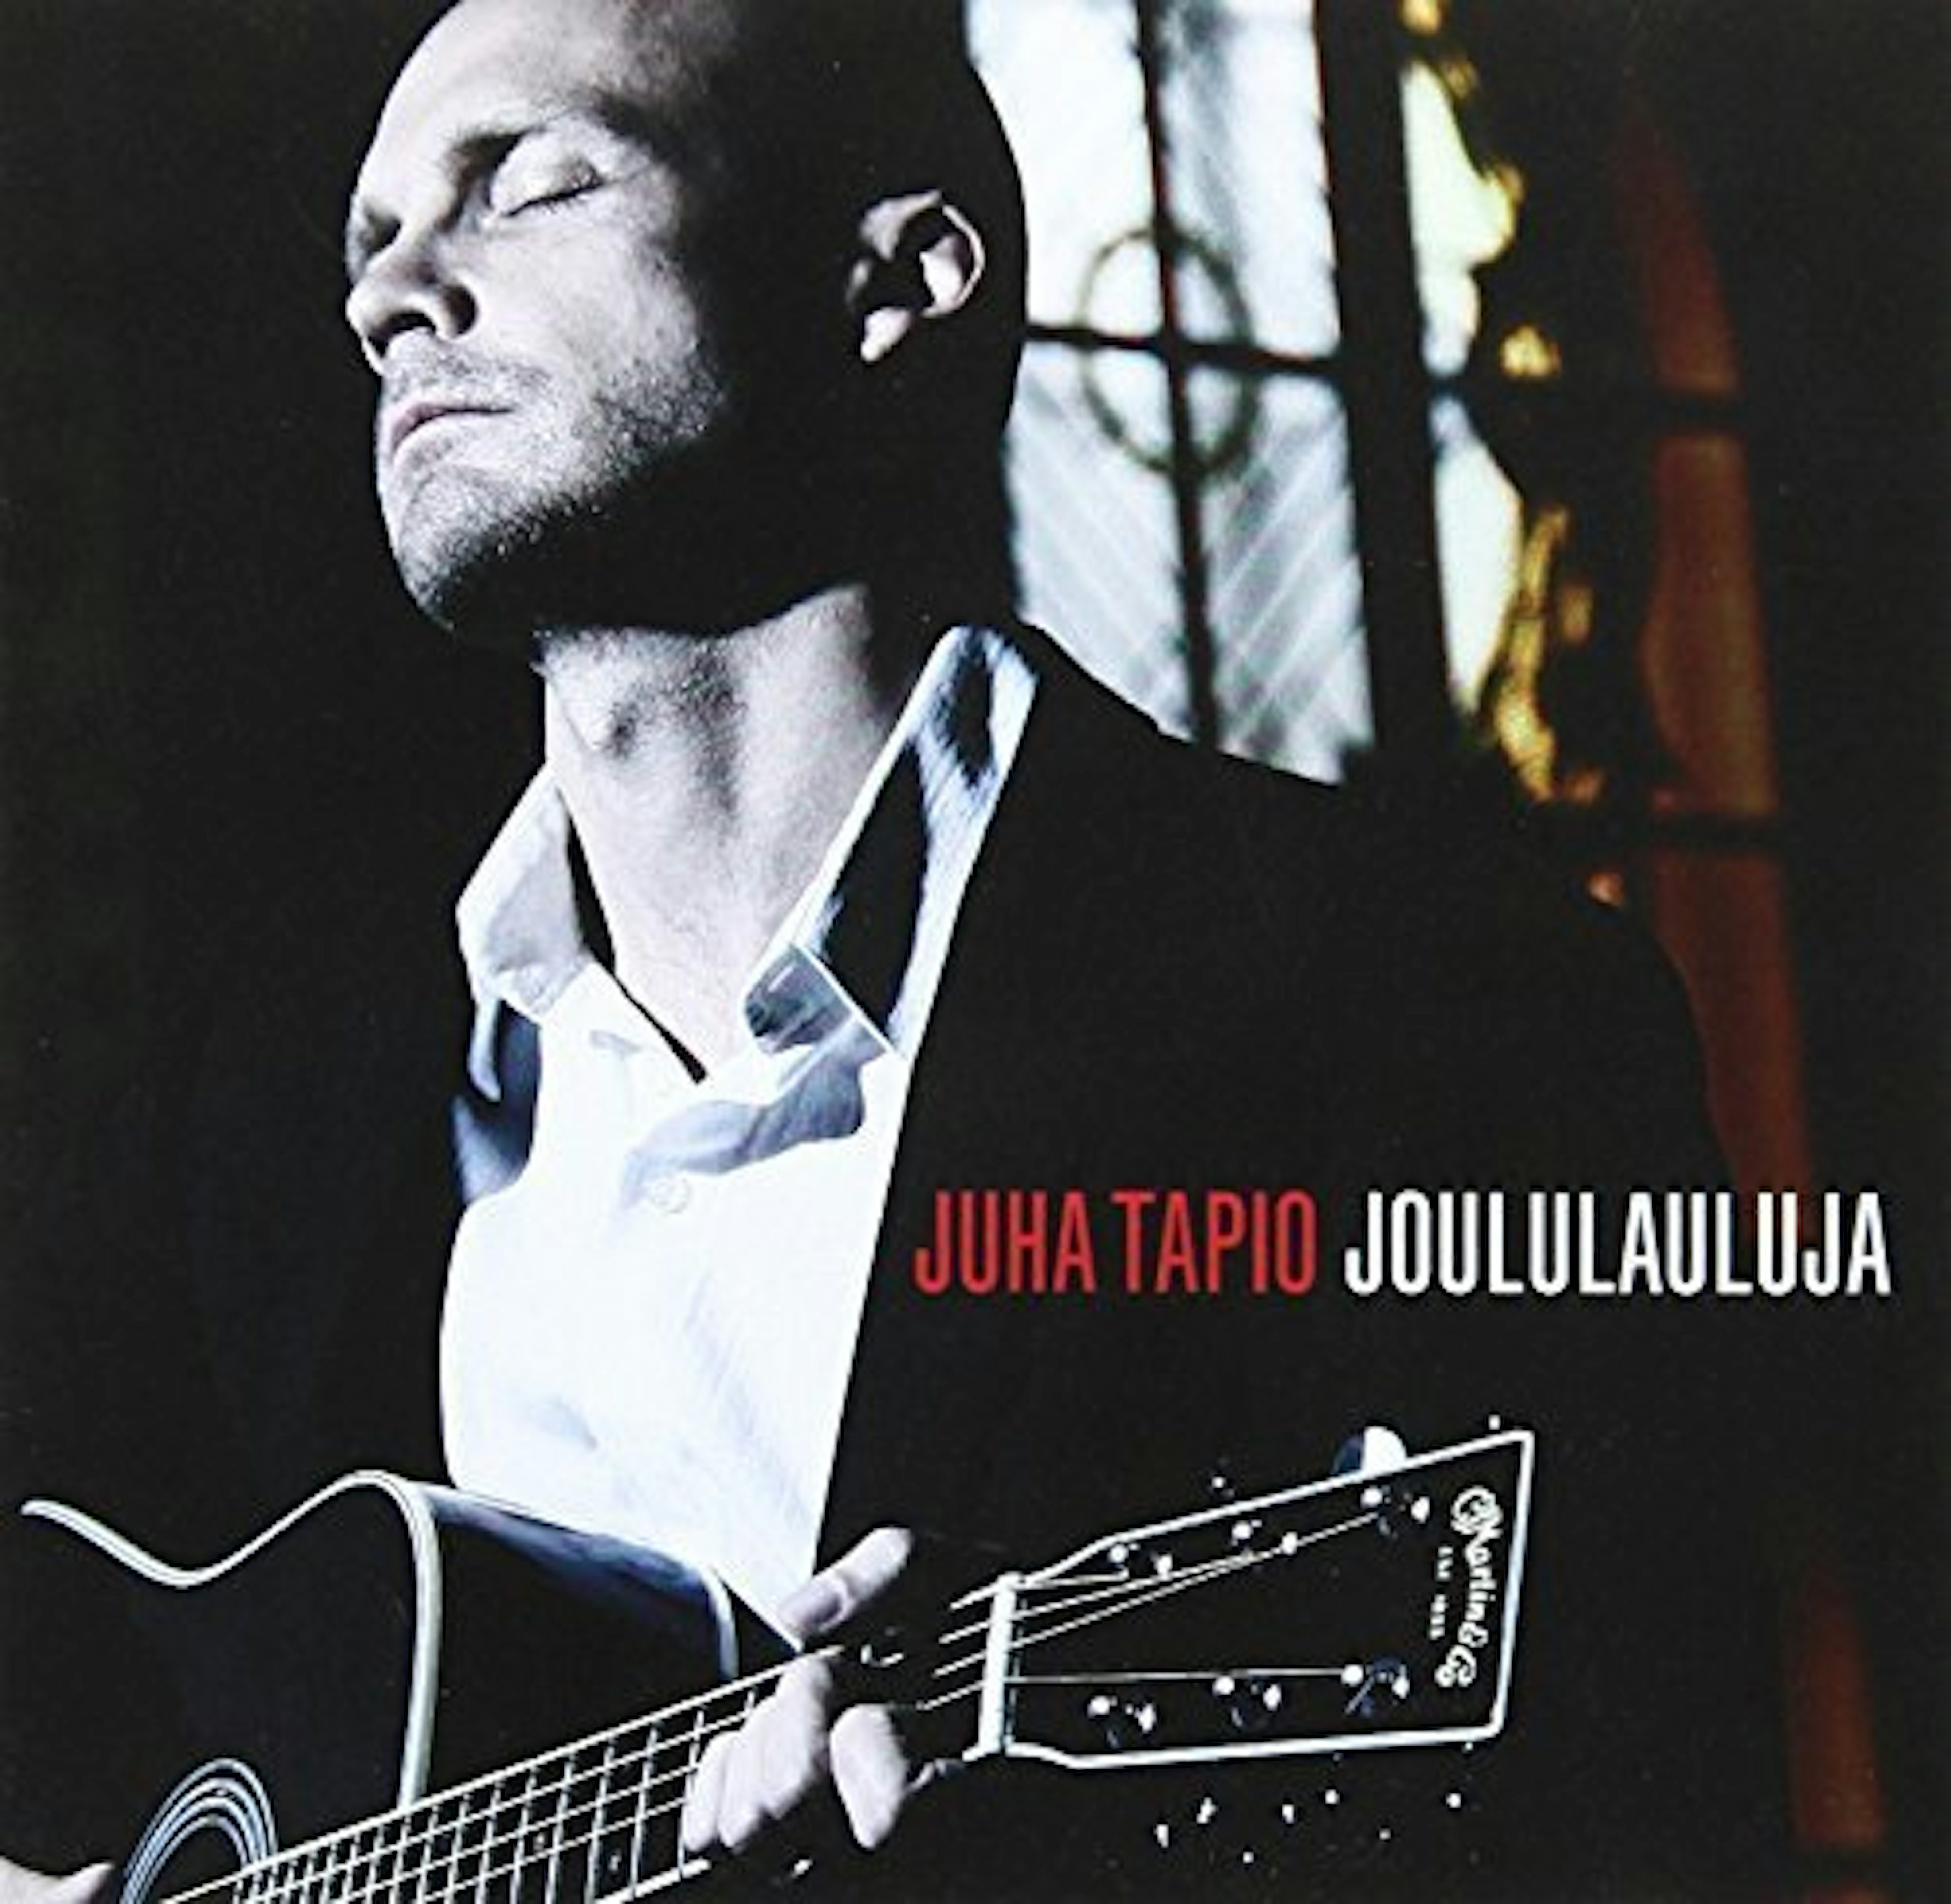 Juha Tapio JOULULAULUJA CD